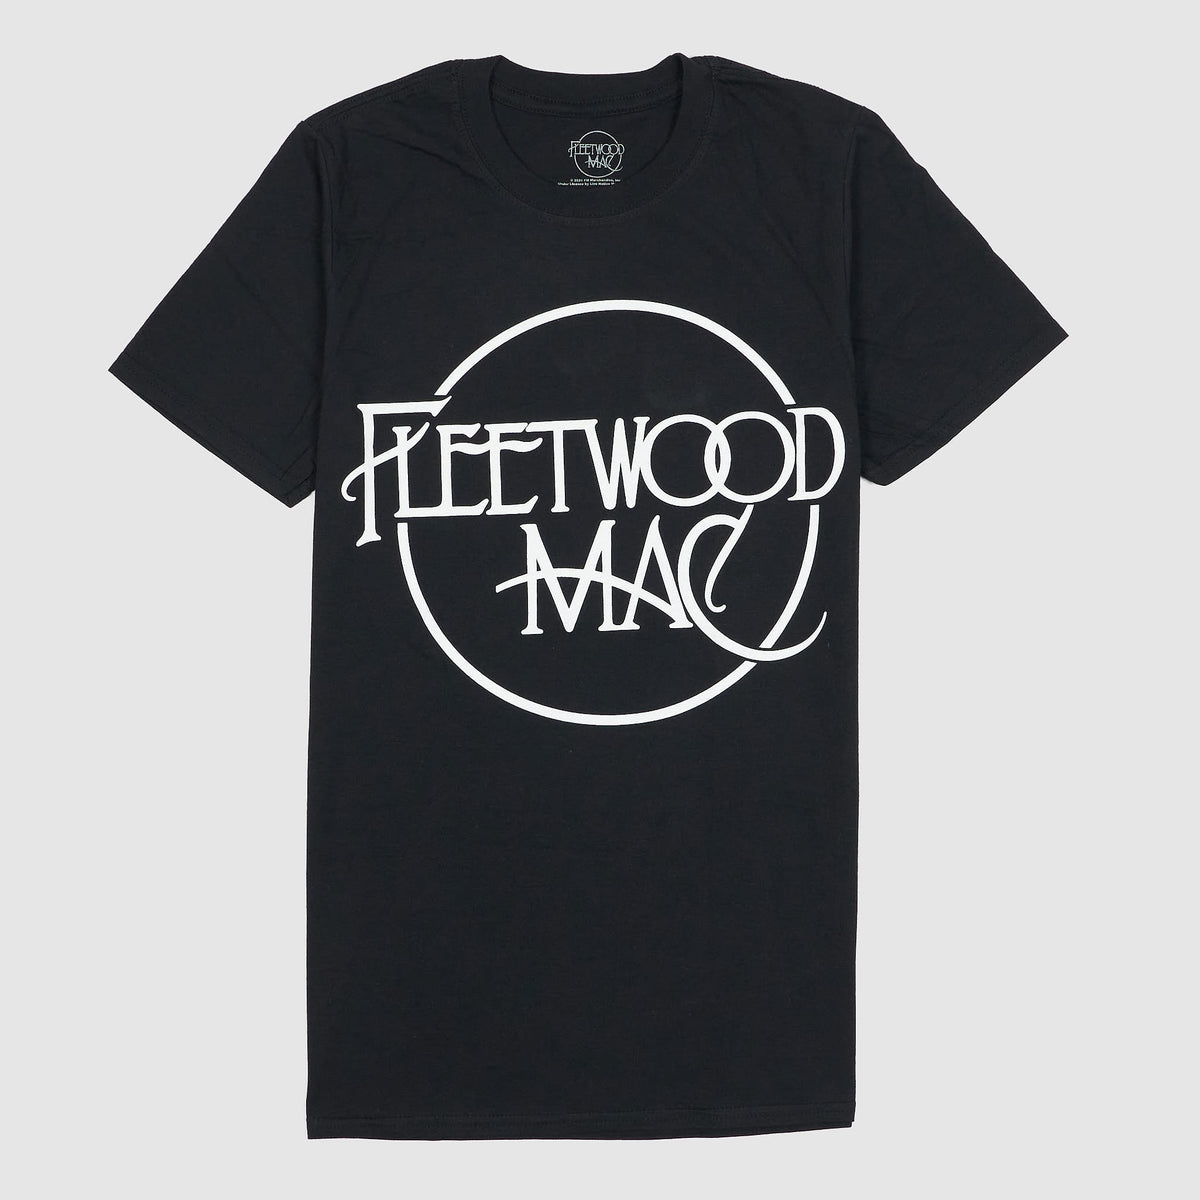 Fleetwood Mac Classic Crew Neck Rock T-Shirt